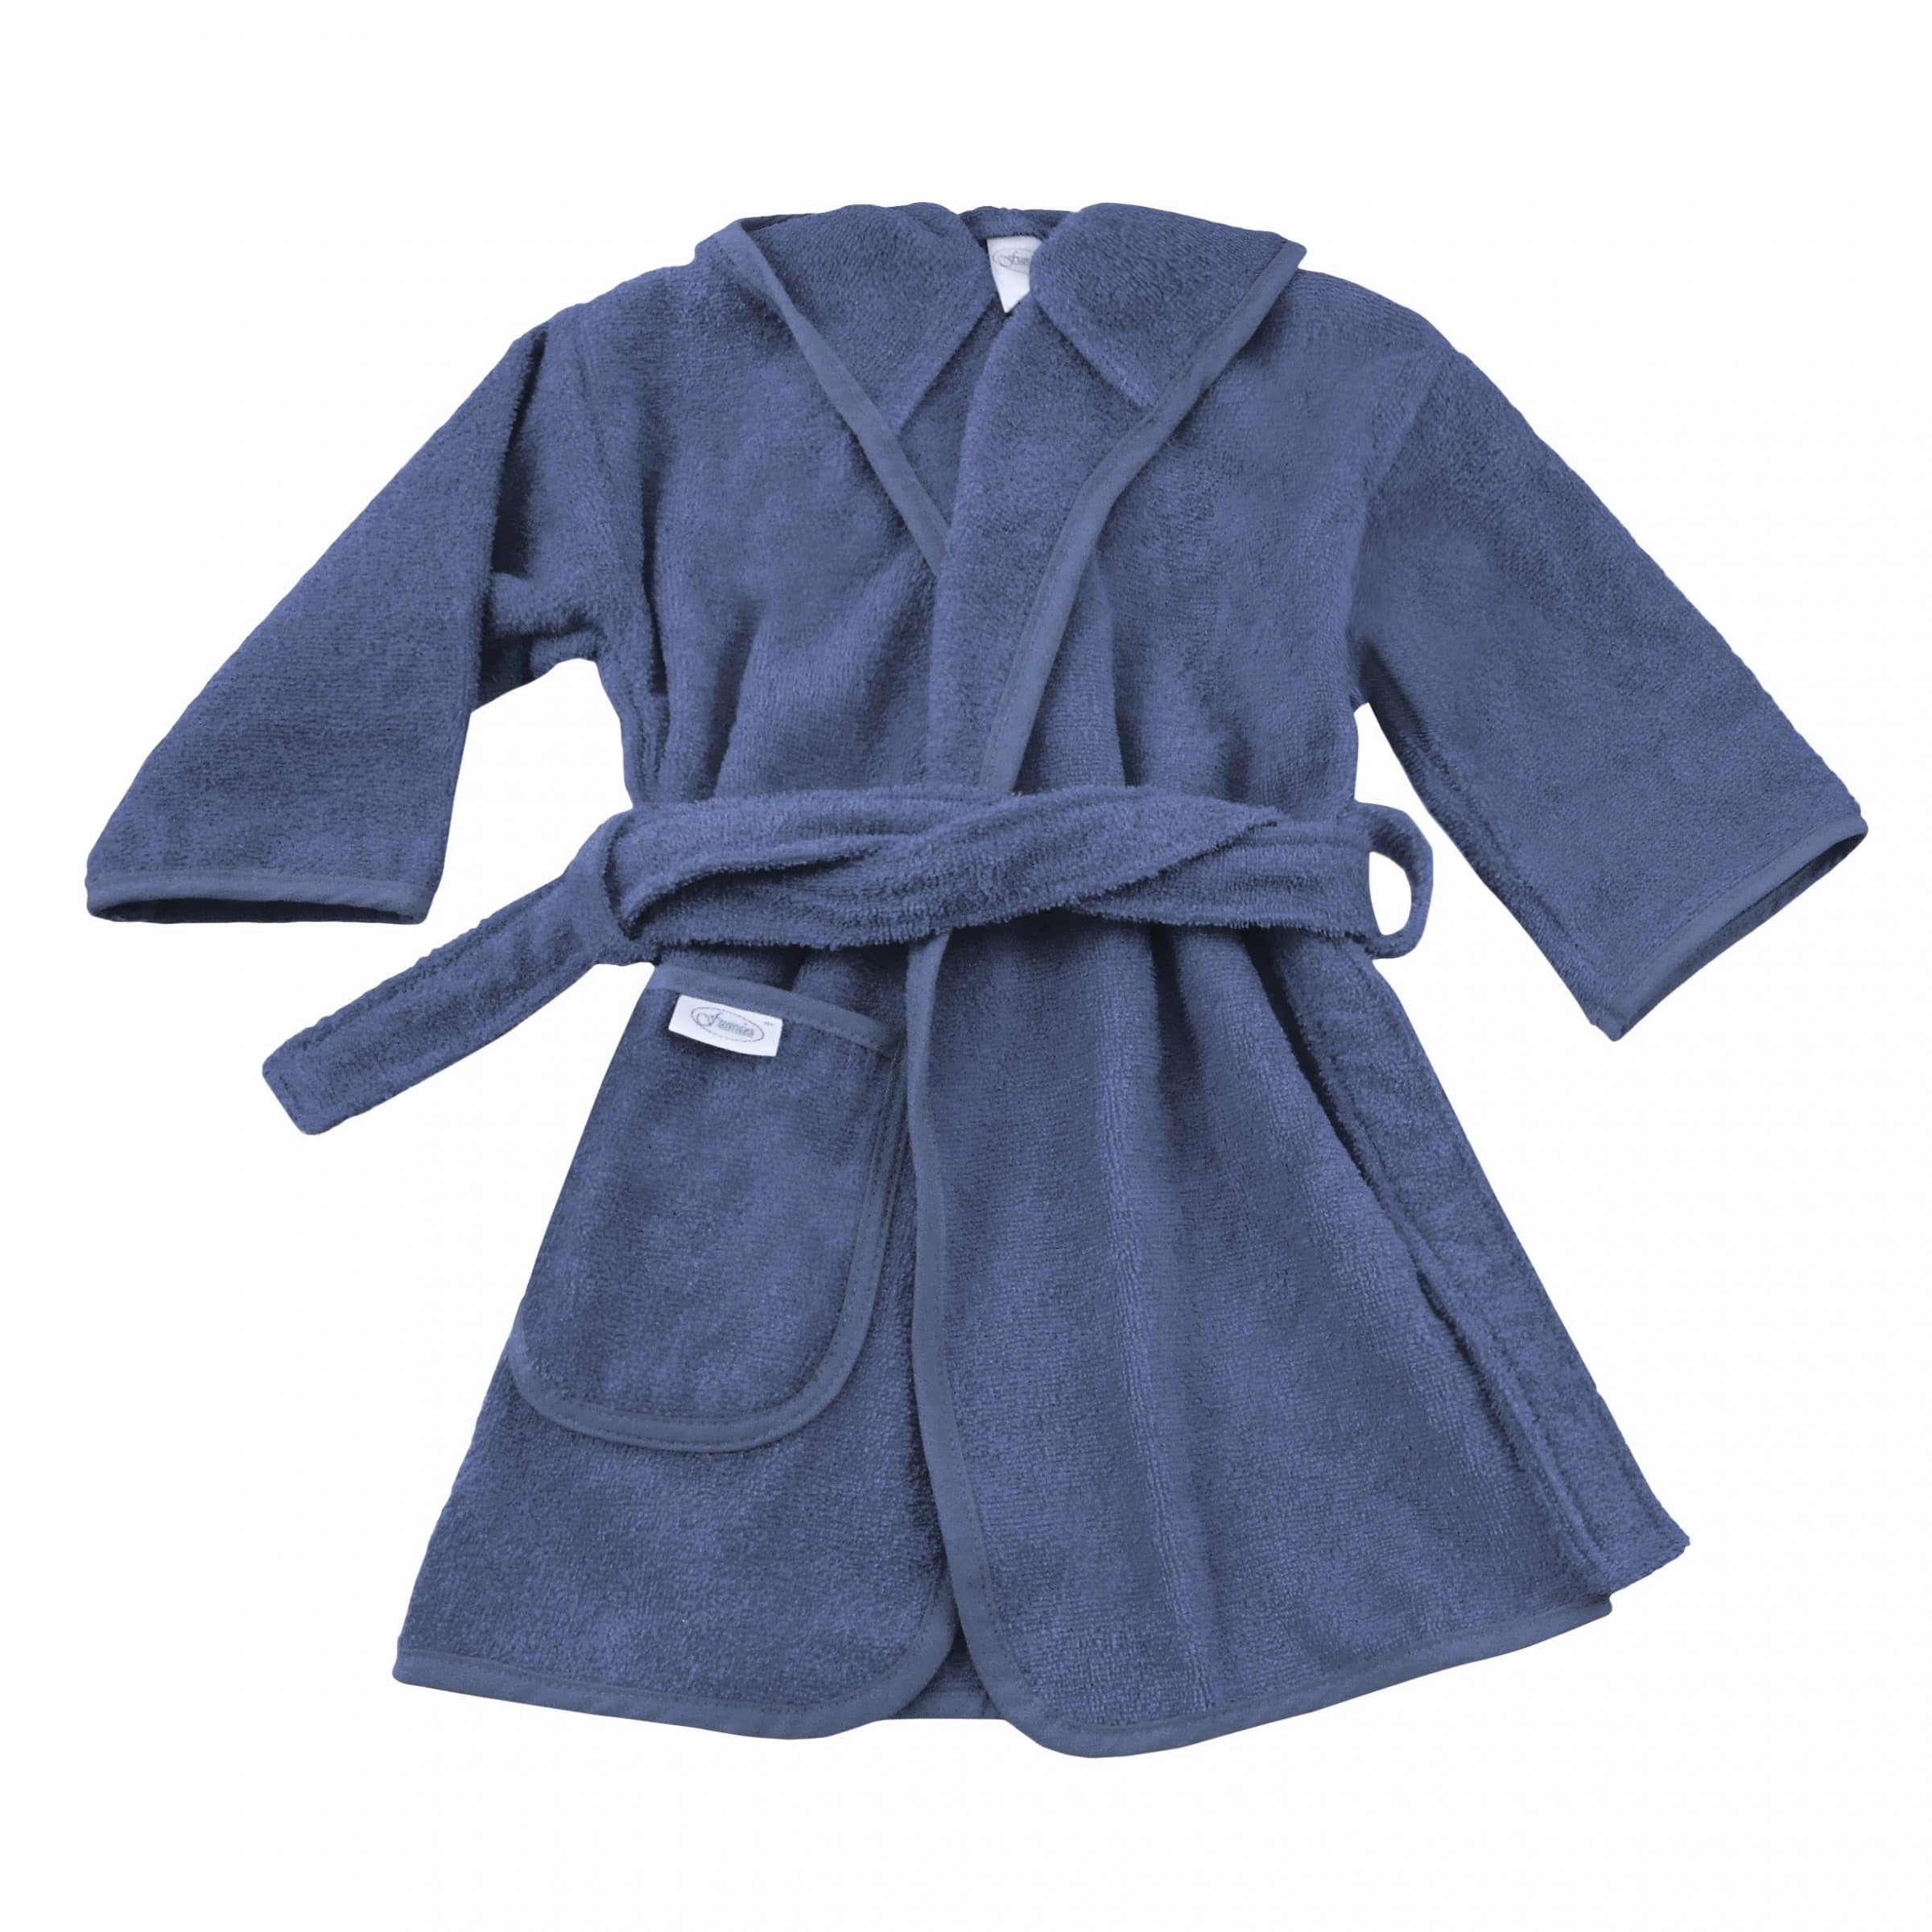 silk-blue-bathrobe-1-scaled-1.jpg